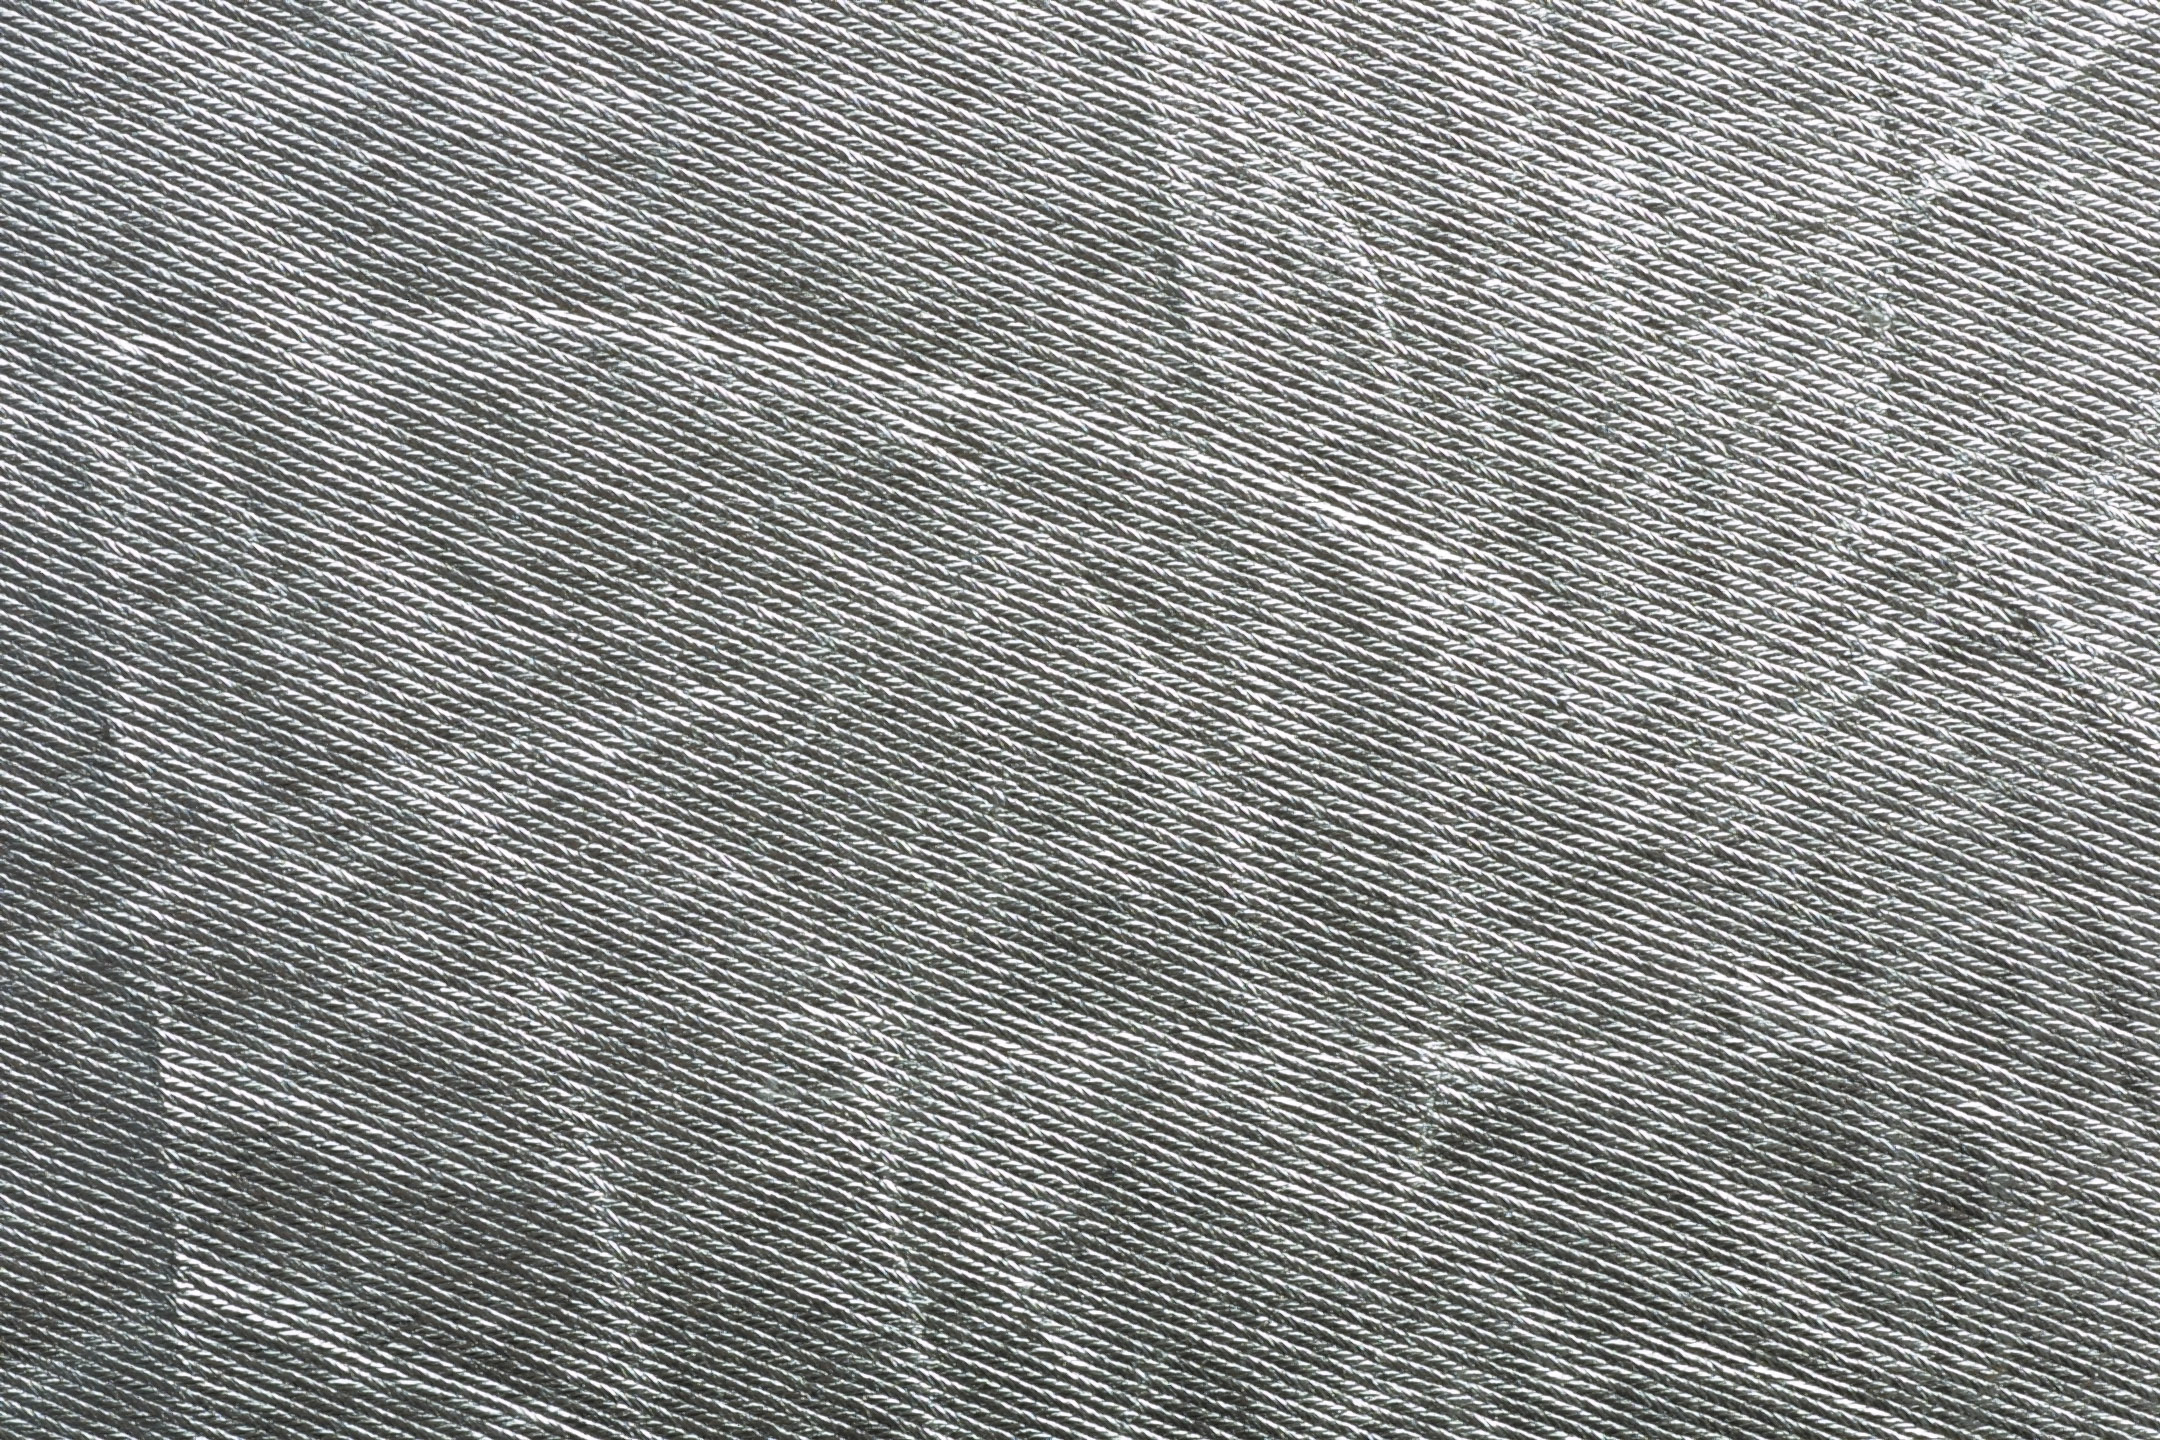 Silver textured wallpaper 2015 - Grasscloth Wallpaper